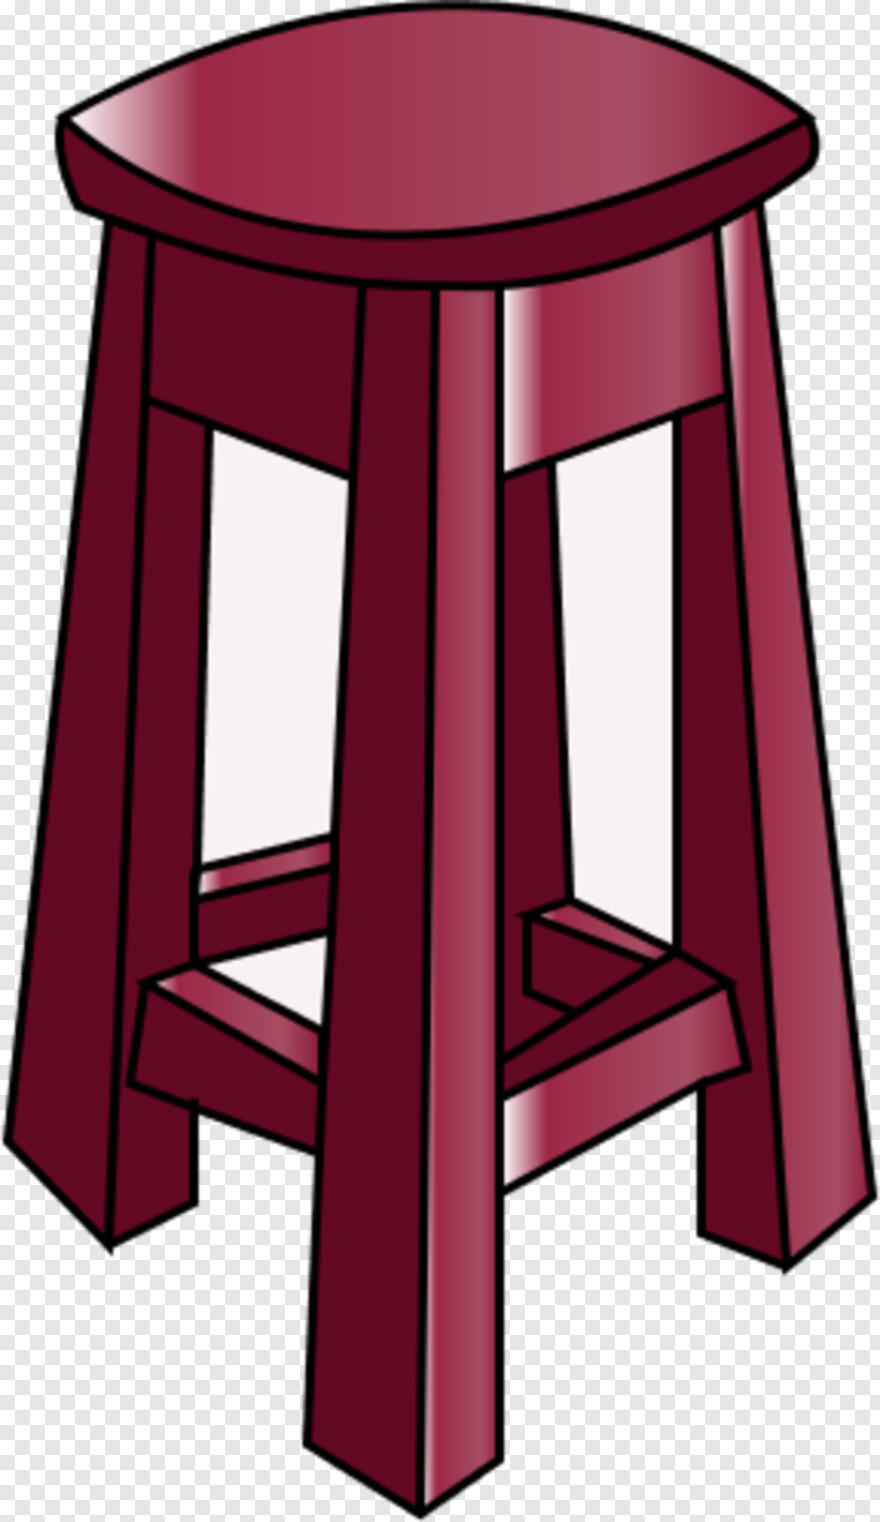 Chair Clipart.